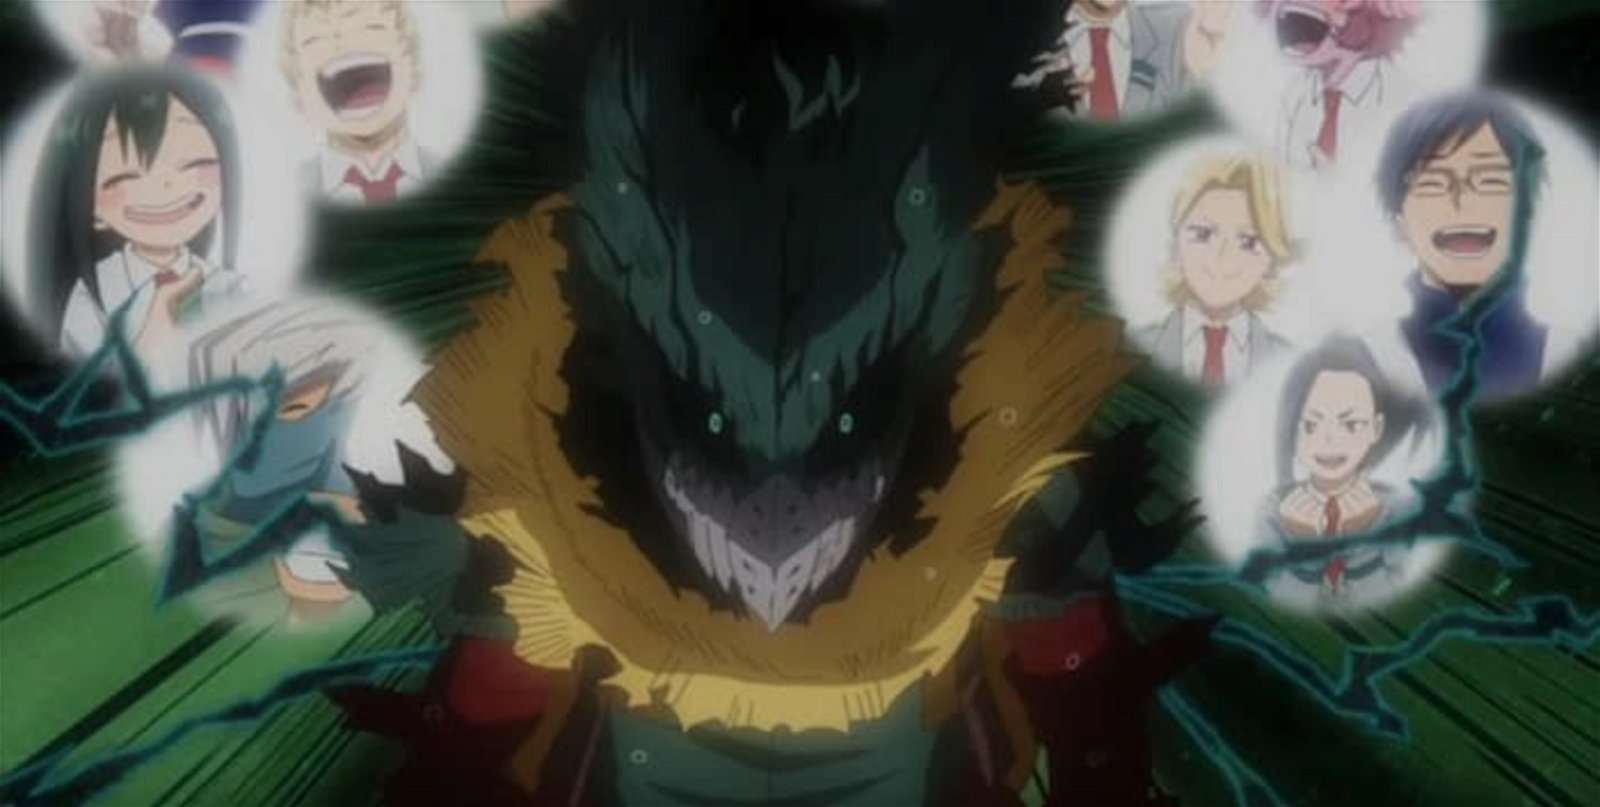 El aspecto de Deku Oscuro en el anime ha sido llevado a otro nivel, su look es bastante aterrador, asemejandose a una criatura demoniaca